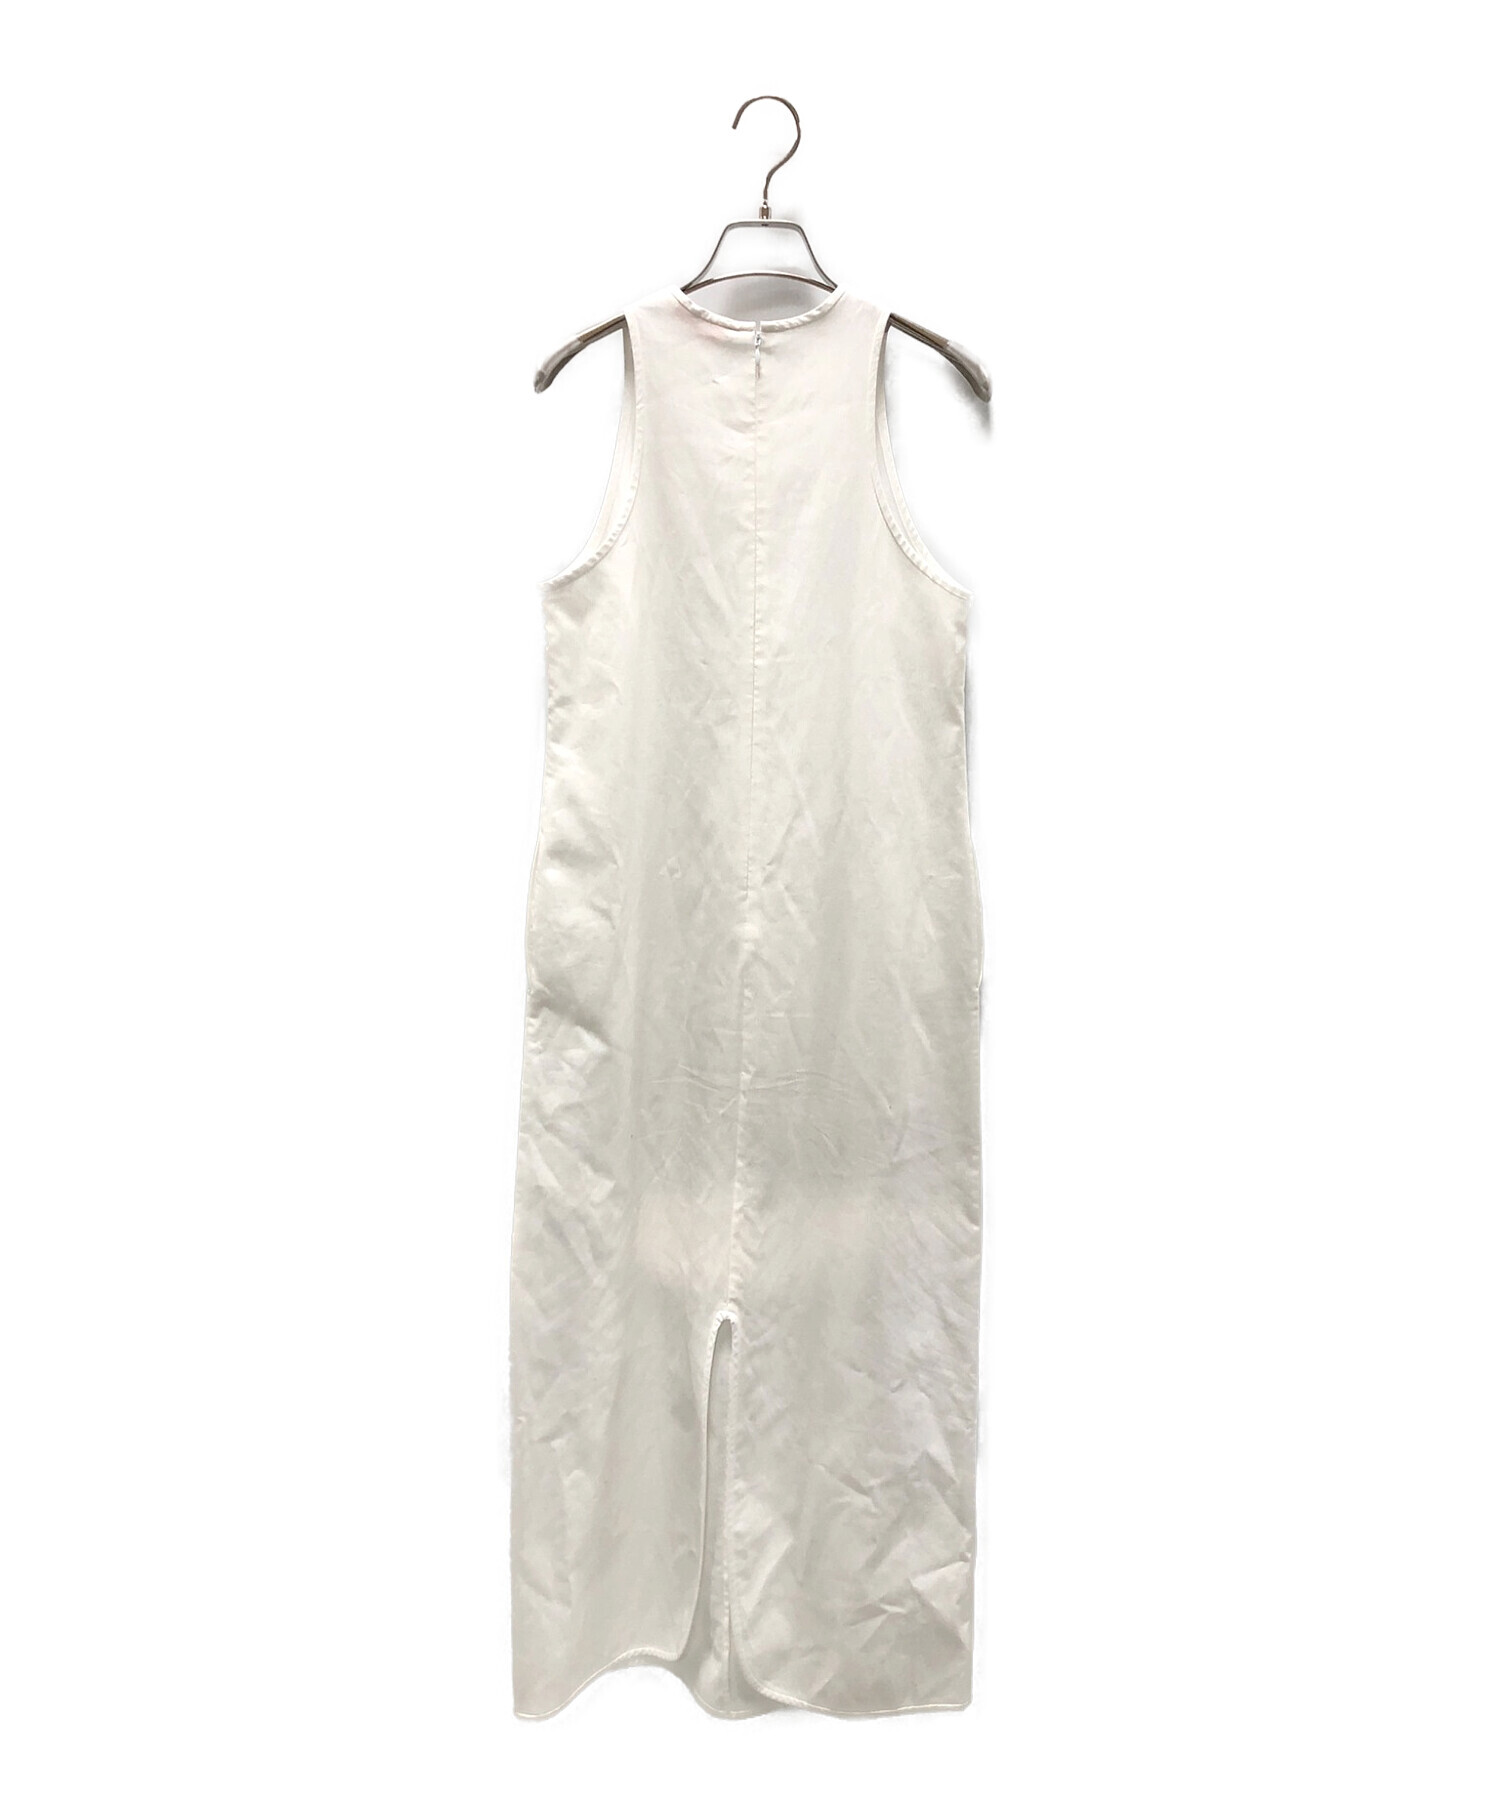 BACCA (バッカ) コットンピケ タンクトップドレス ホワイト サイズ:36